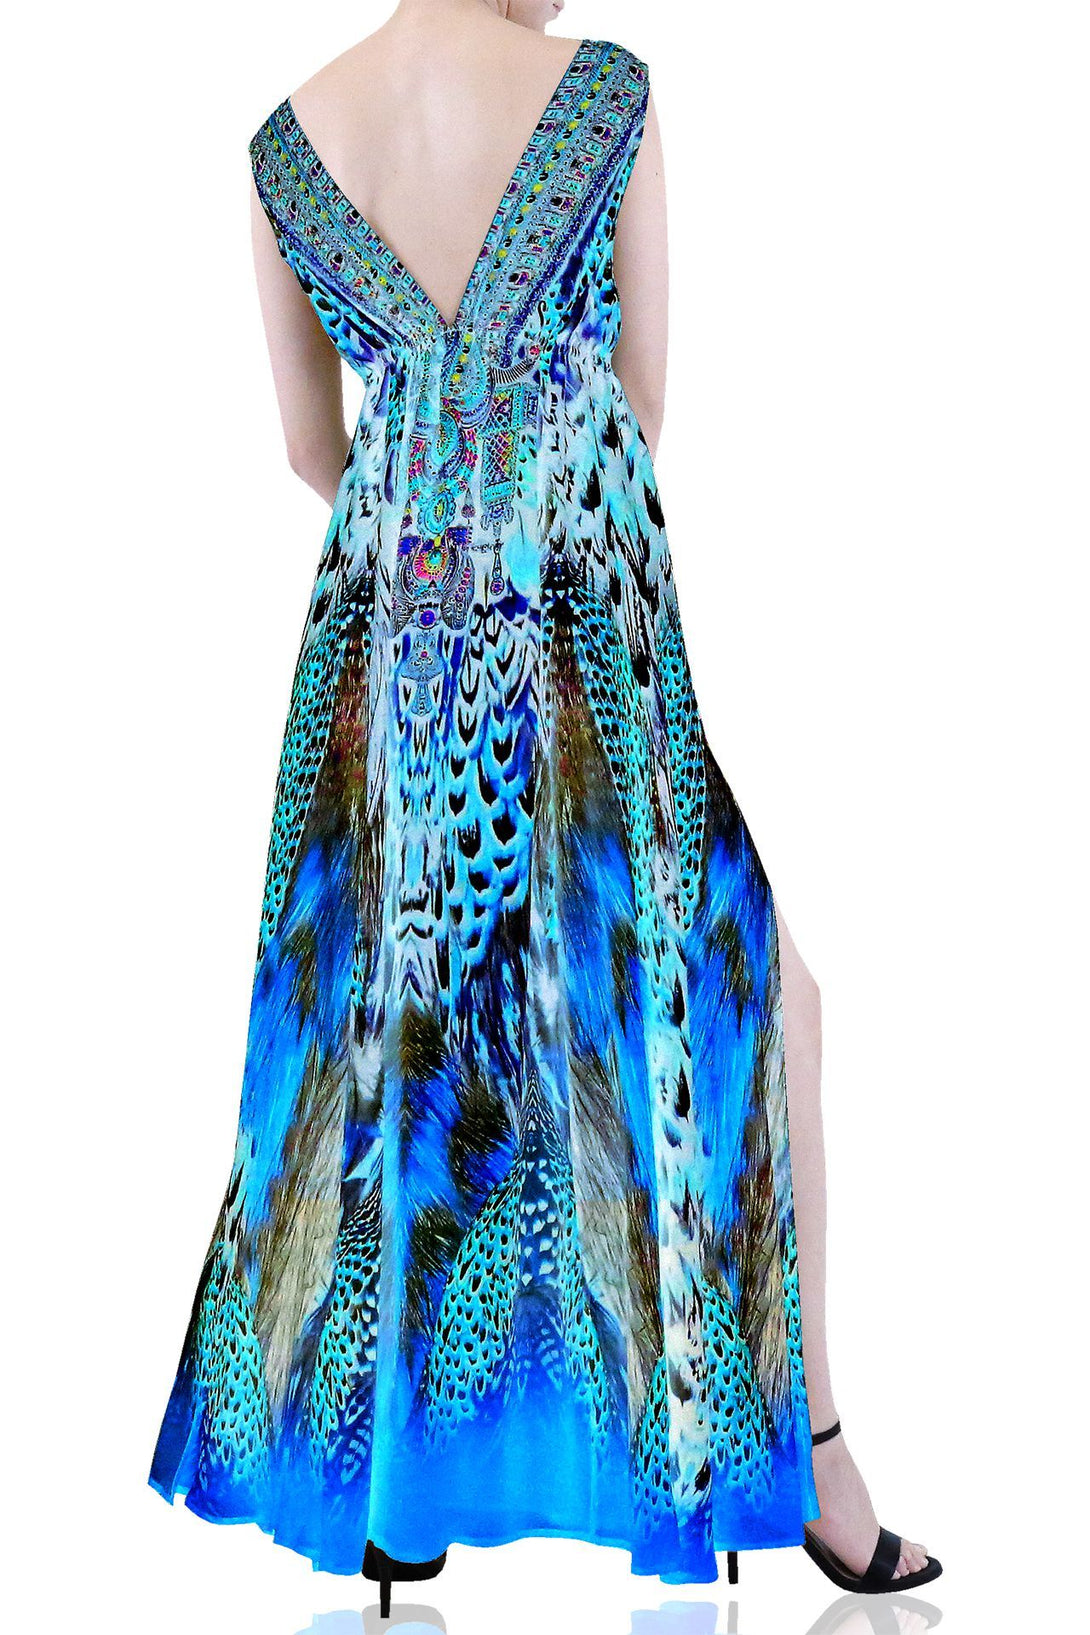  blue long dress formal, summer maxi dresses for women, plunging v neck formal dress,